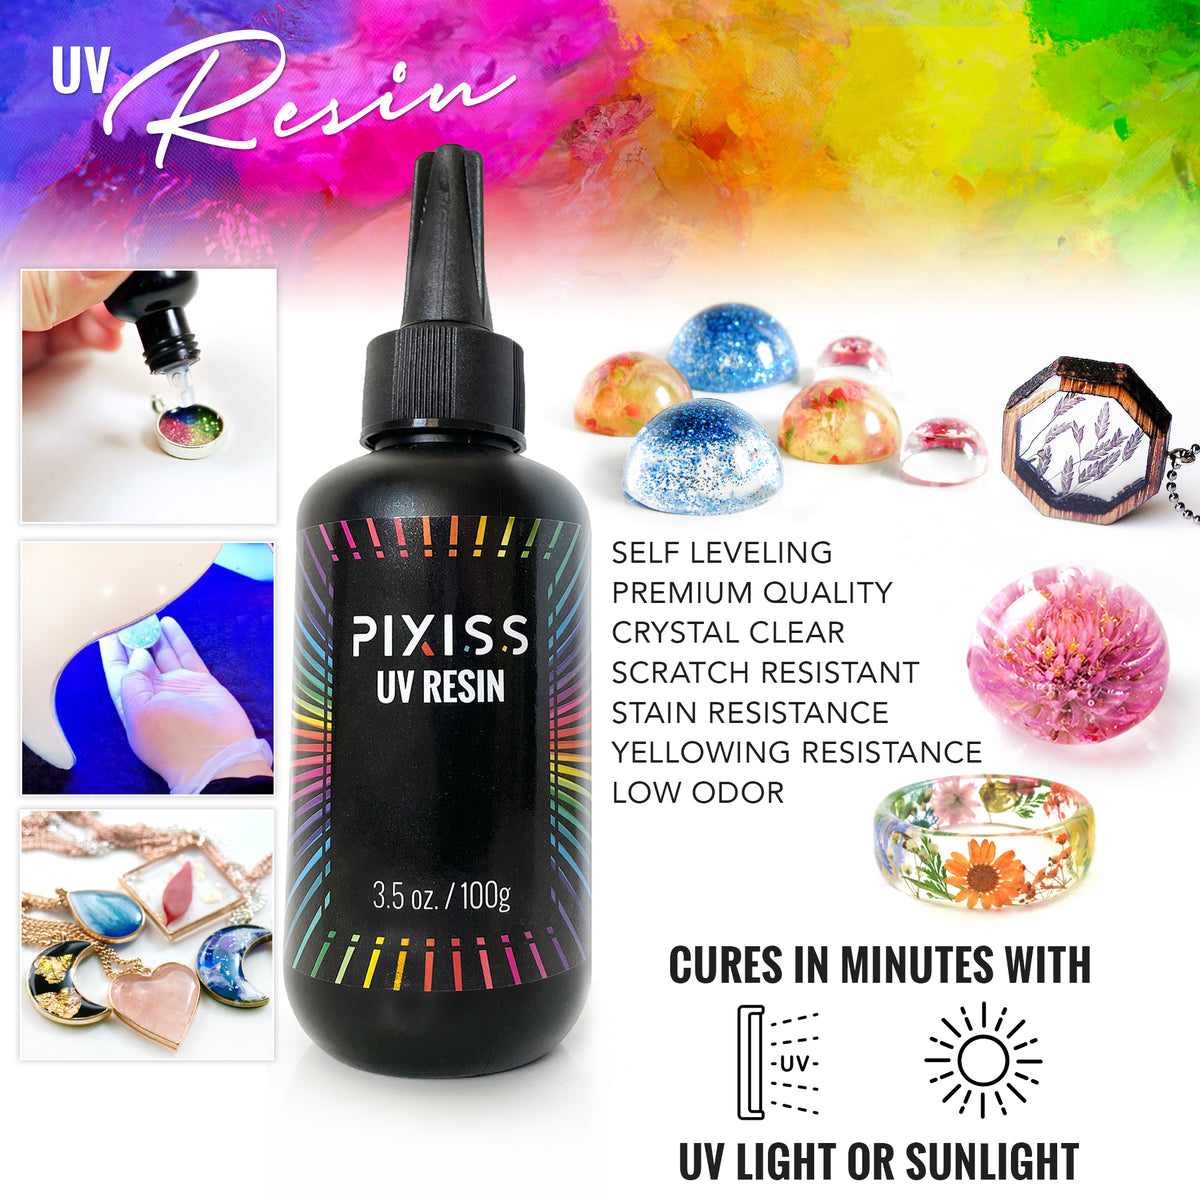 Let's Resin UV Resin Kit for Bonding - 100g